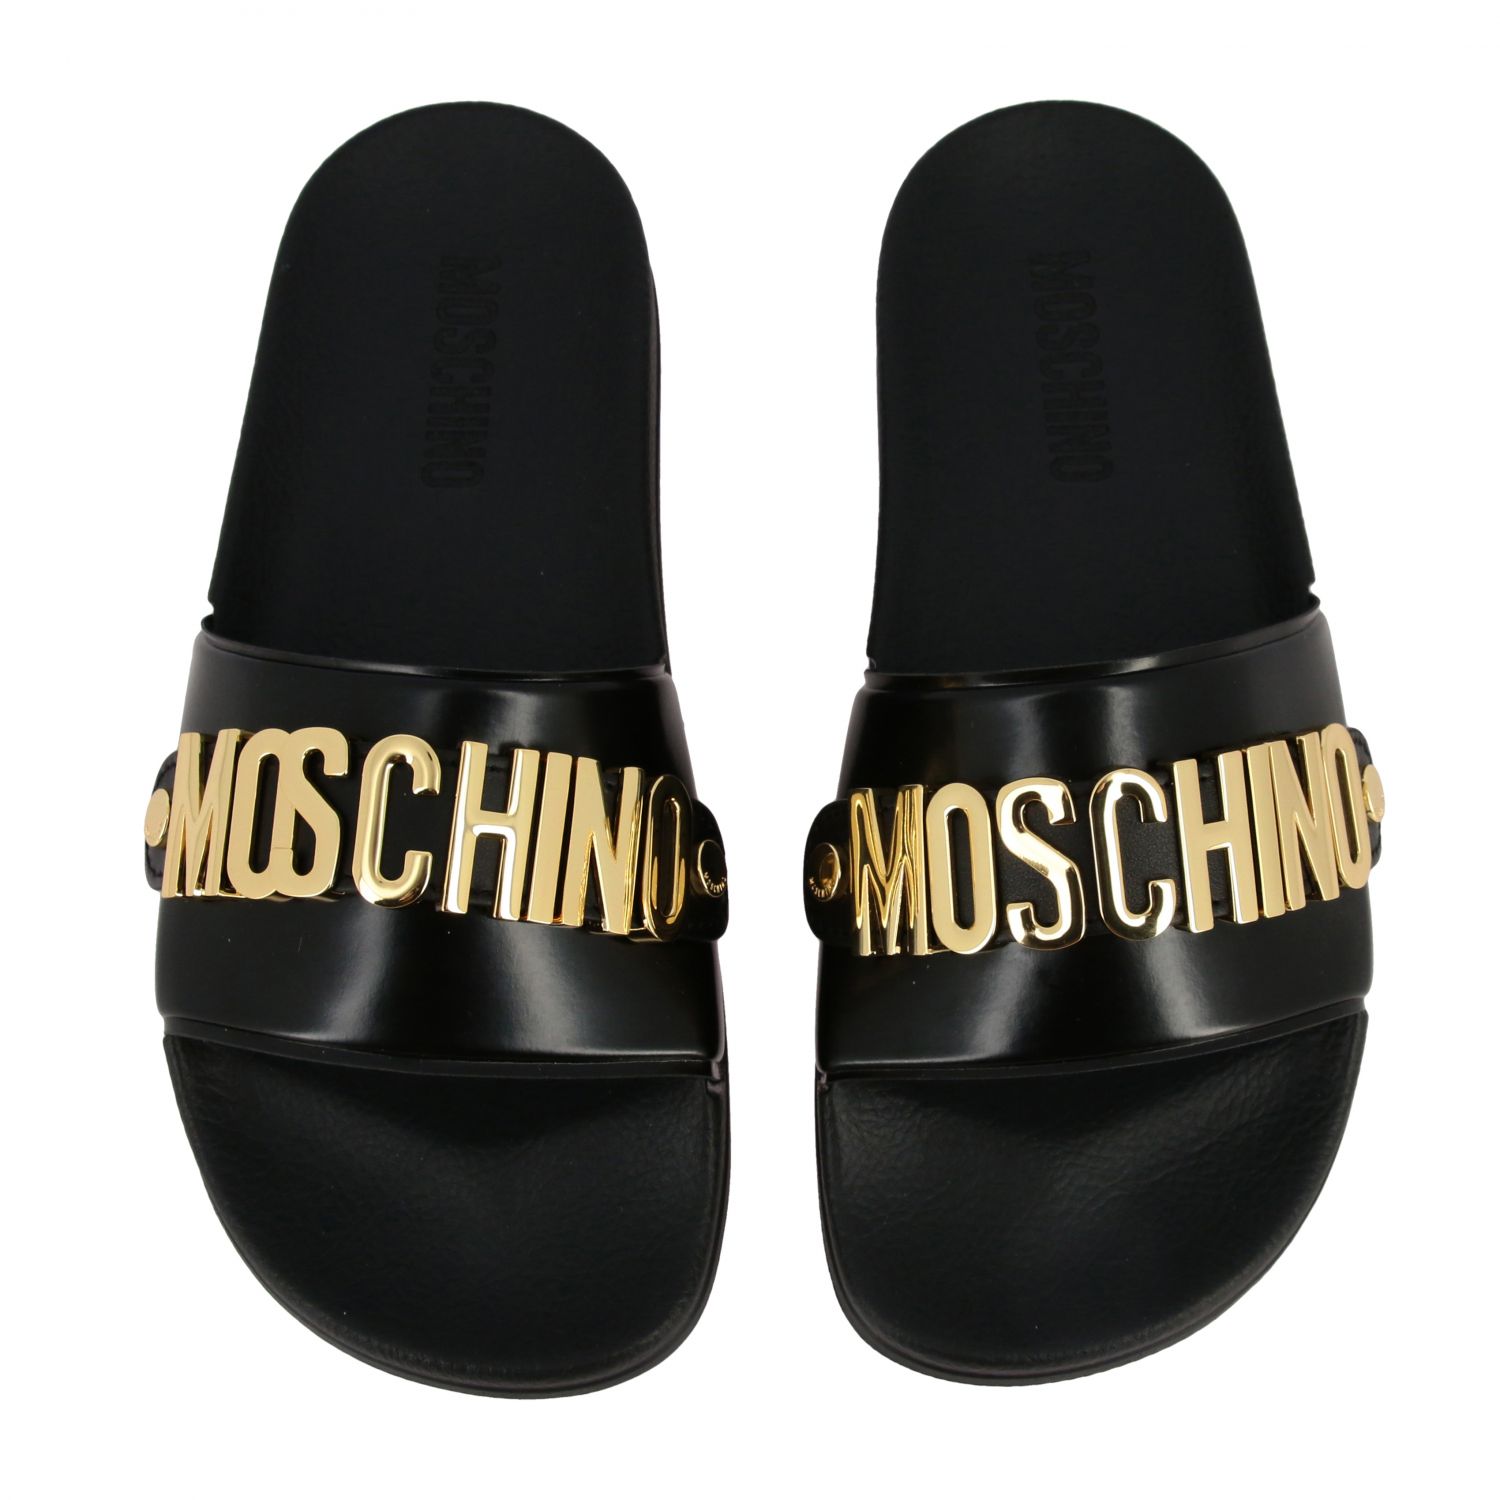 moschino slippers